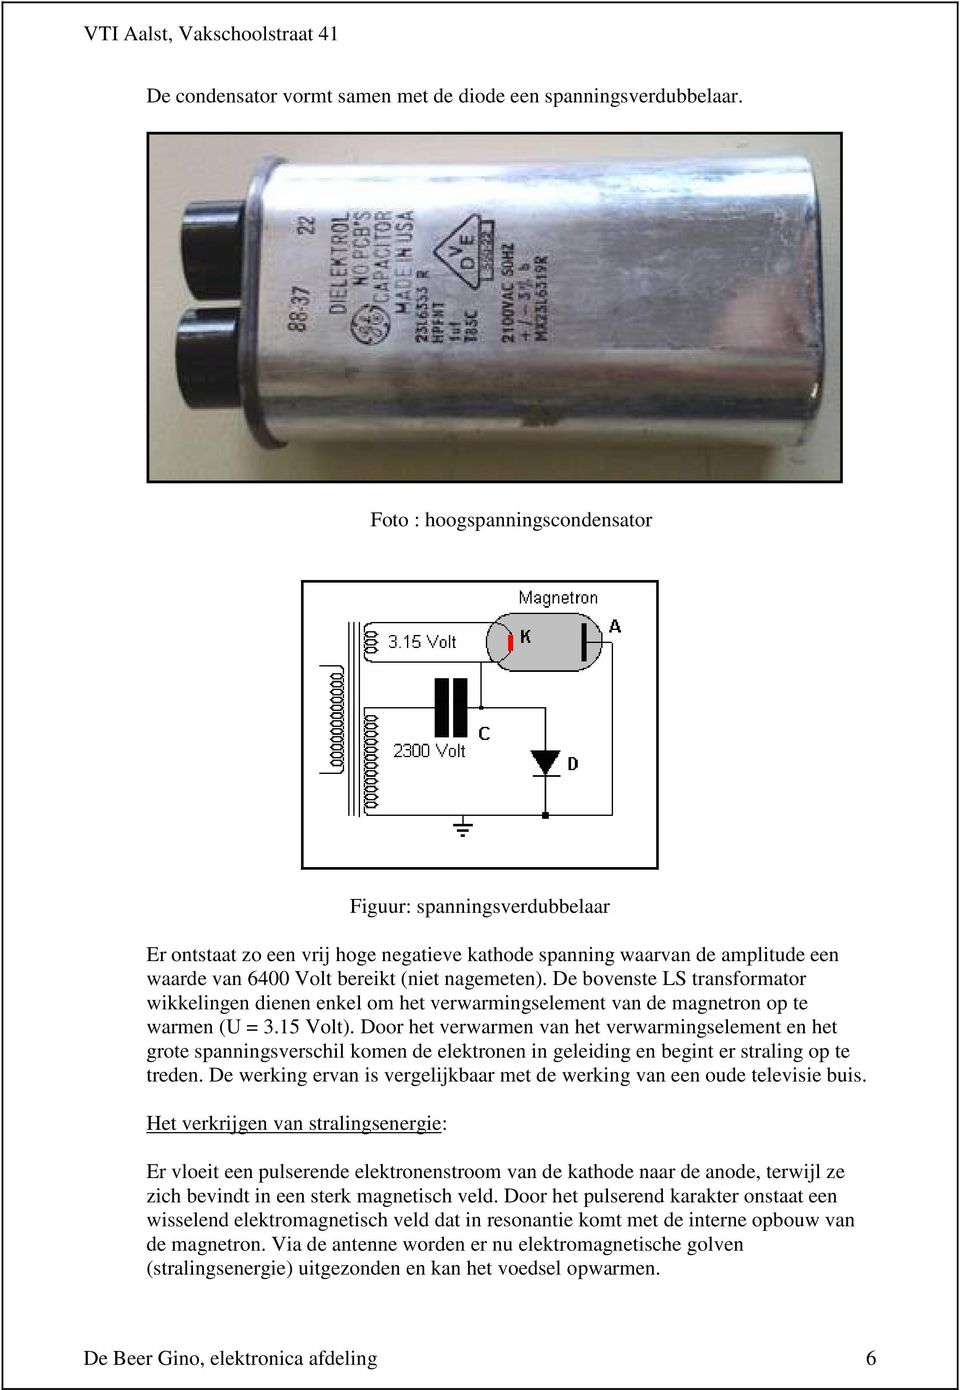 De bovenste LS transformator wikkelingen dienen enkel om het verwarmingselement van de magnetron op te warmen (U = 3.15 Volt).